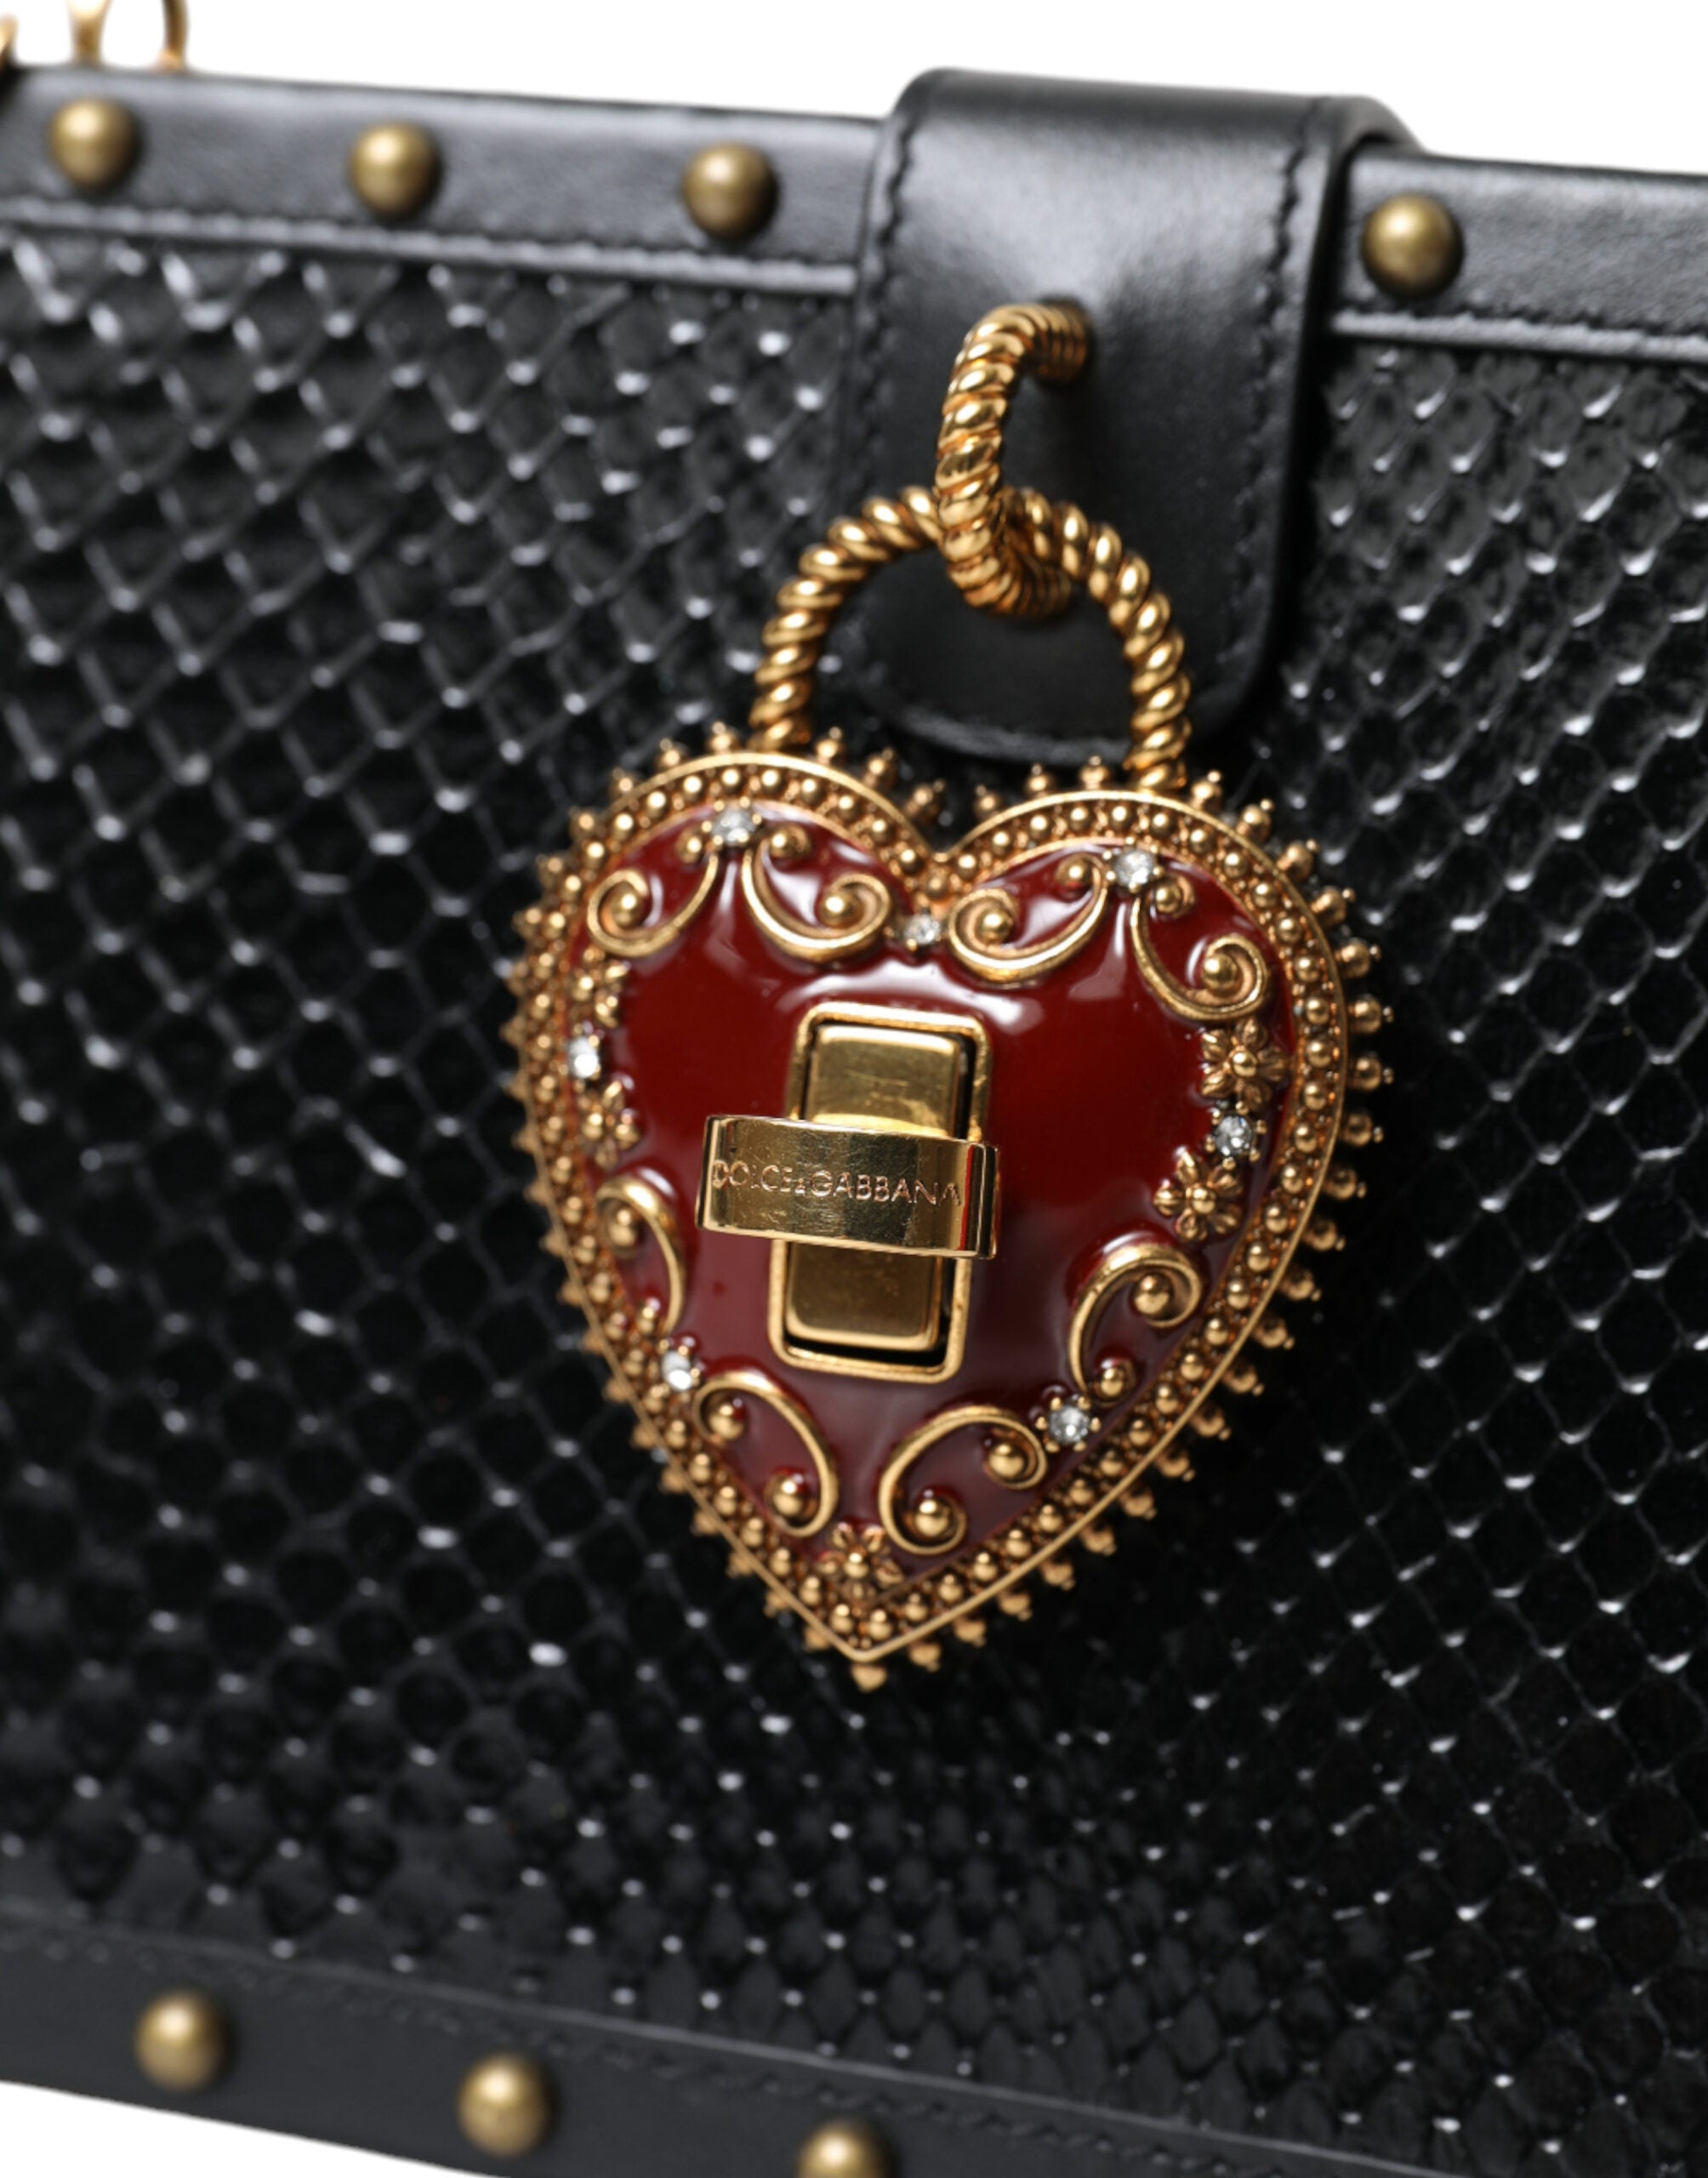 Dolce & Gabbana Black Snakeskin Leather Gold HEART Studs Box Shoulder Clutch Bag